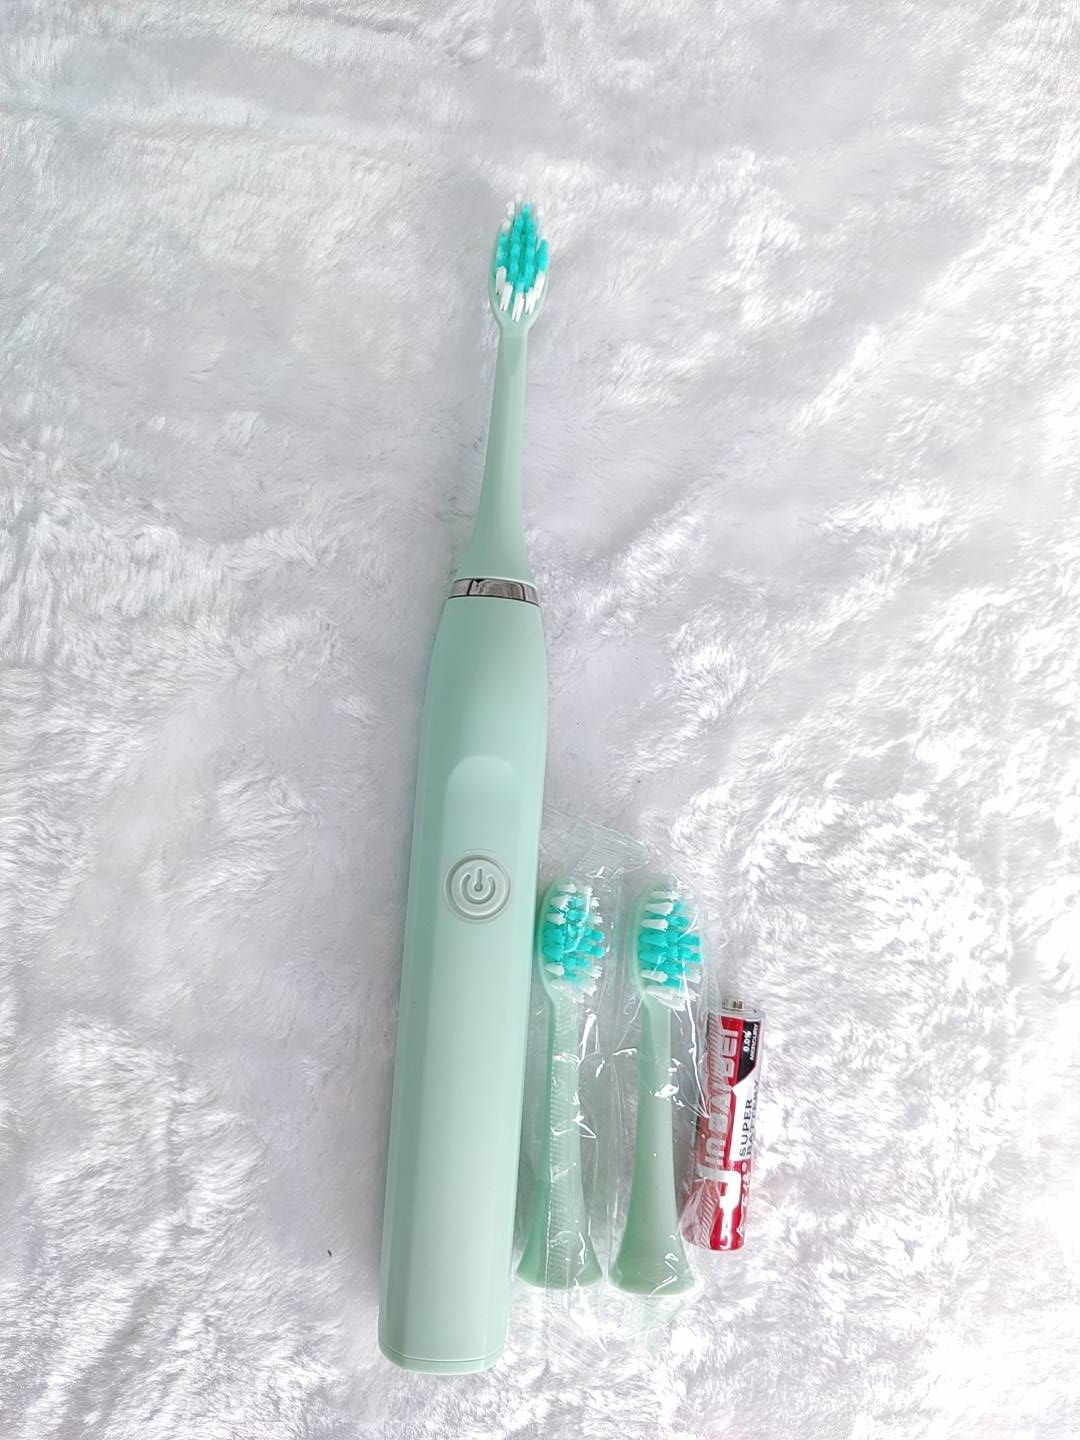 แปรงสีฟันไฟฟ้าแบบใส่ถ่าน หัวแปรงเปลี่ยน 3 หัวแปรงโหมดอัฉริยะในการแปรงใช้ง่าย ด้ามจับถนัดมือพร้อมถ่านสำหรับใส่Electric Sonic Toothbrush